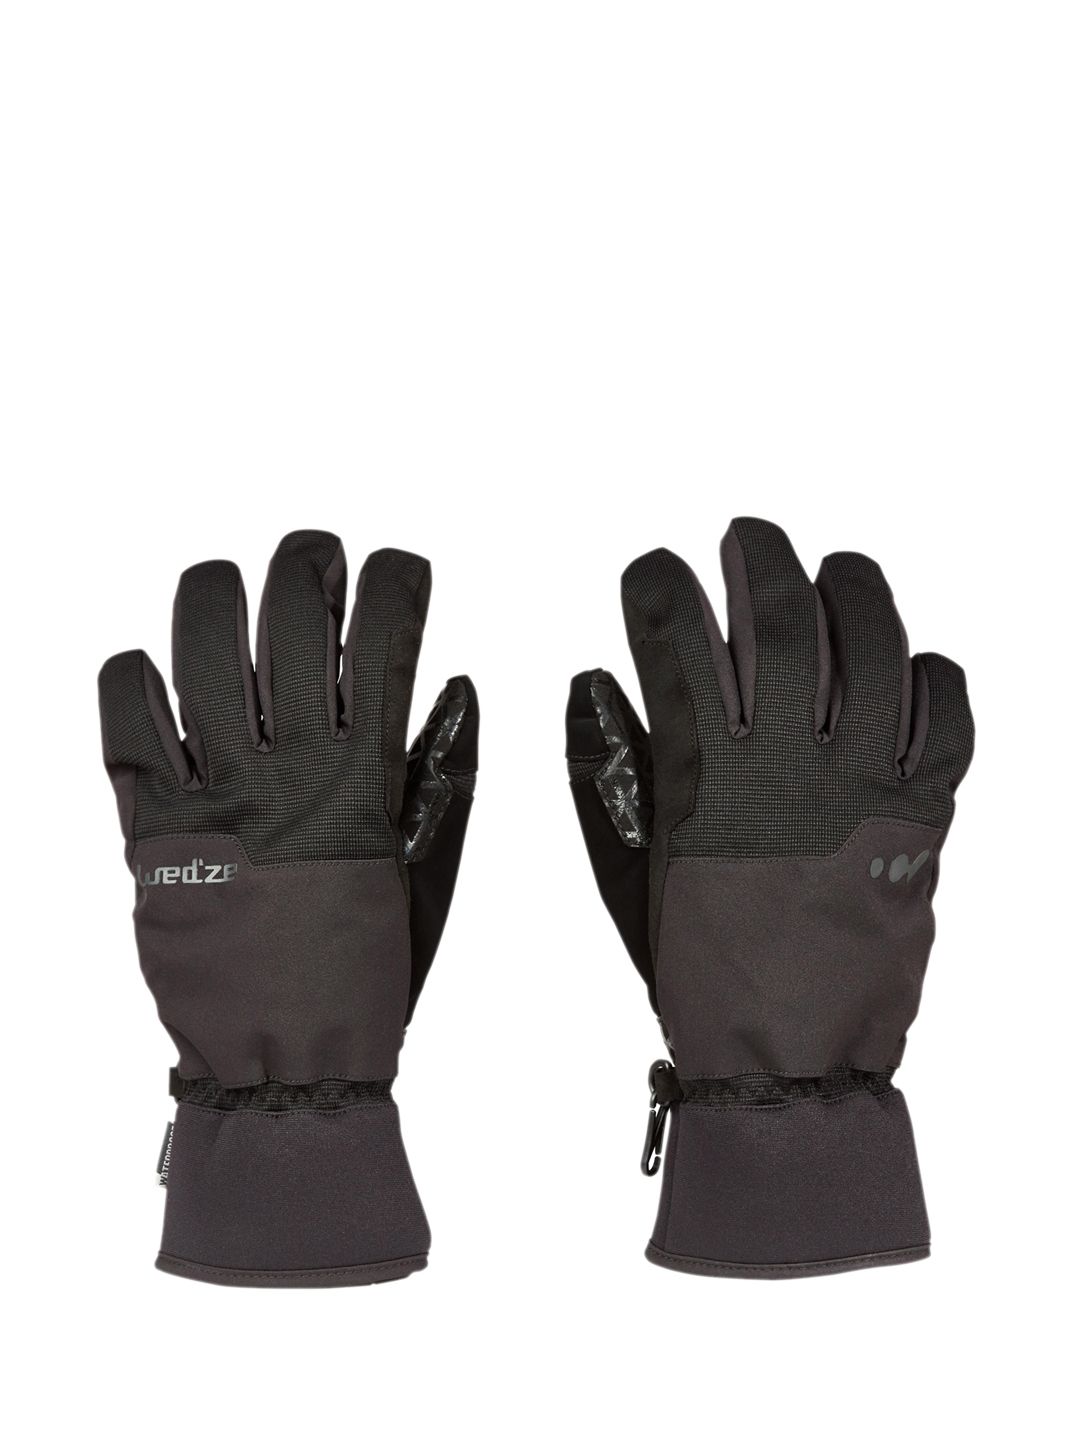 WEDZE By Decathlon Unisex Black Waterproof Gloves Price in India